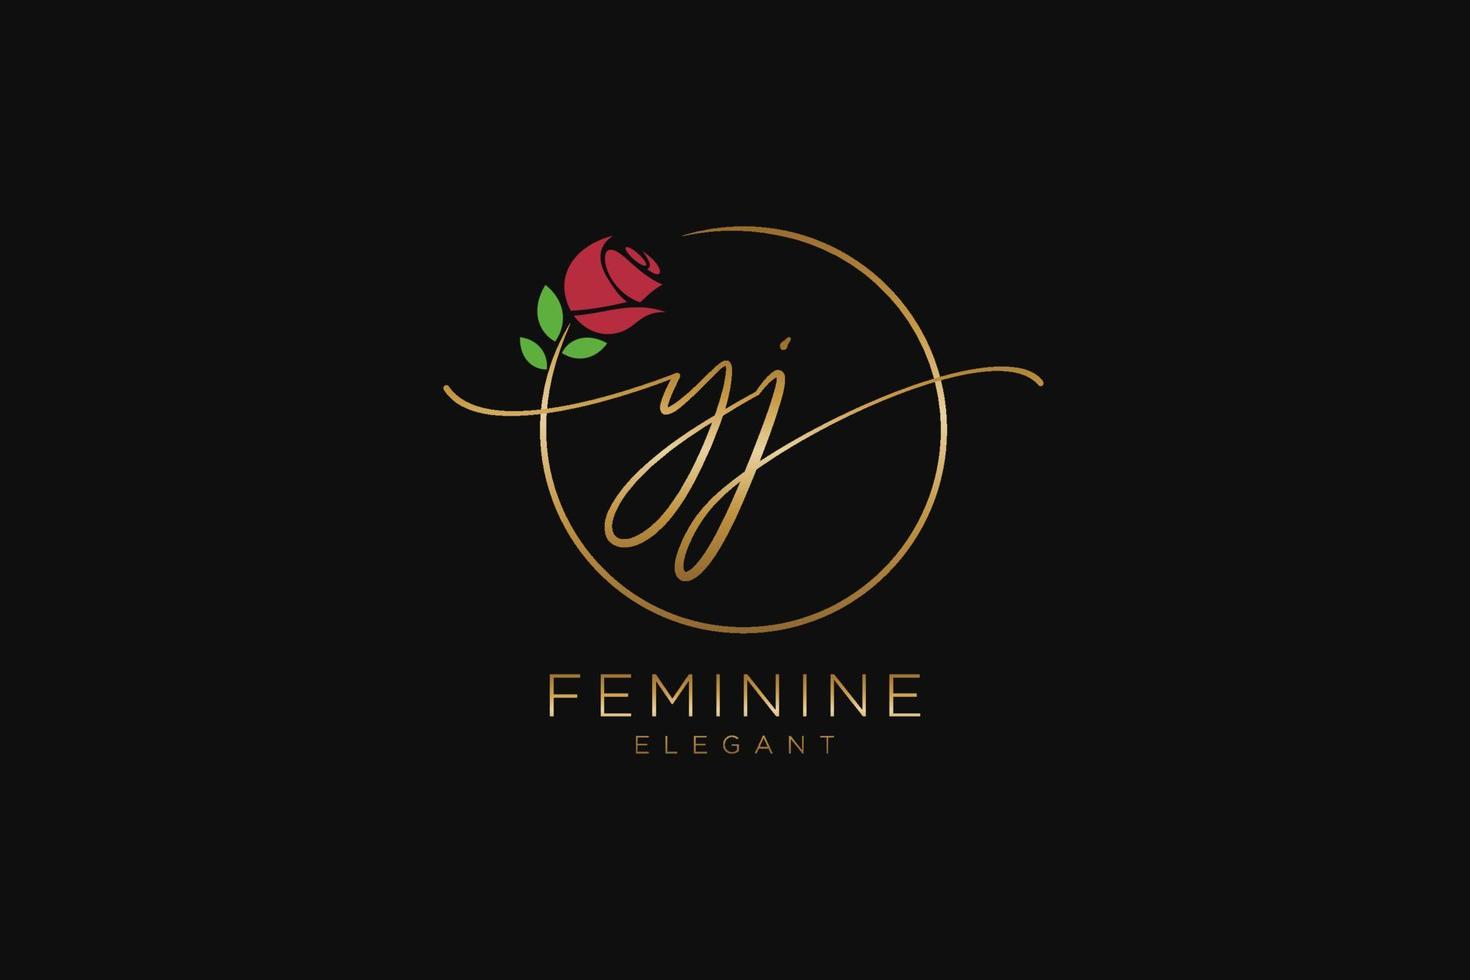 monogramme de beauté du logo féminin initial yj et design élégant du logo, logo manuscrit de la signature initiale, mariage, mode, floral et botanique avec modèle créatif. vecteur